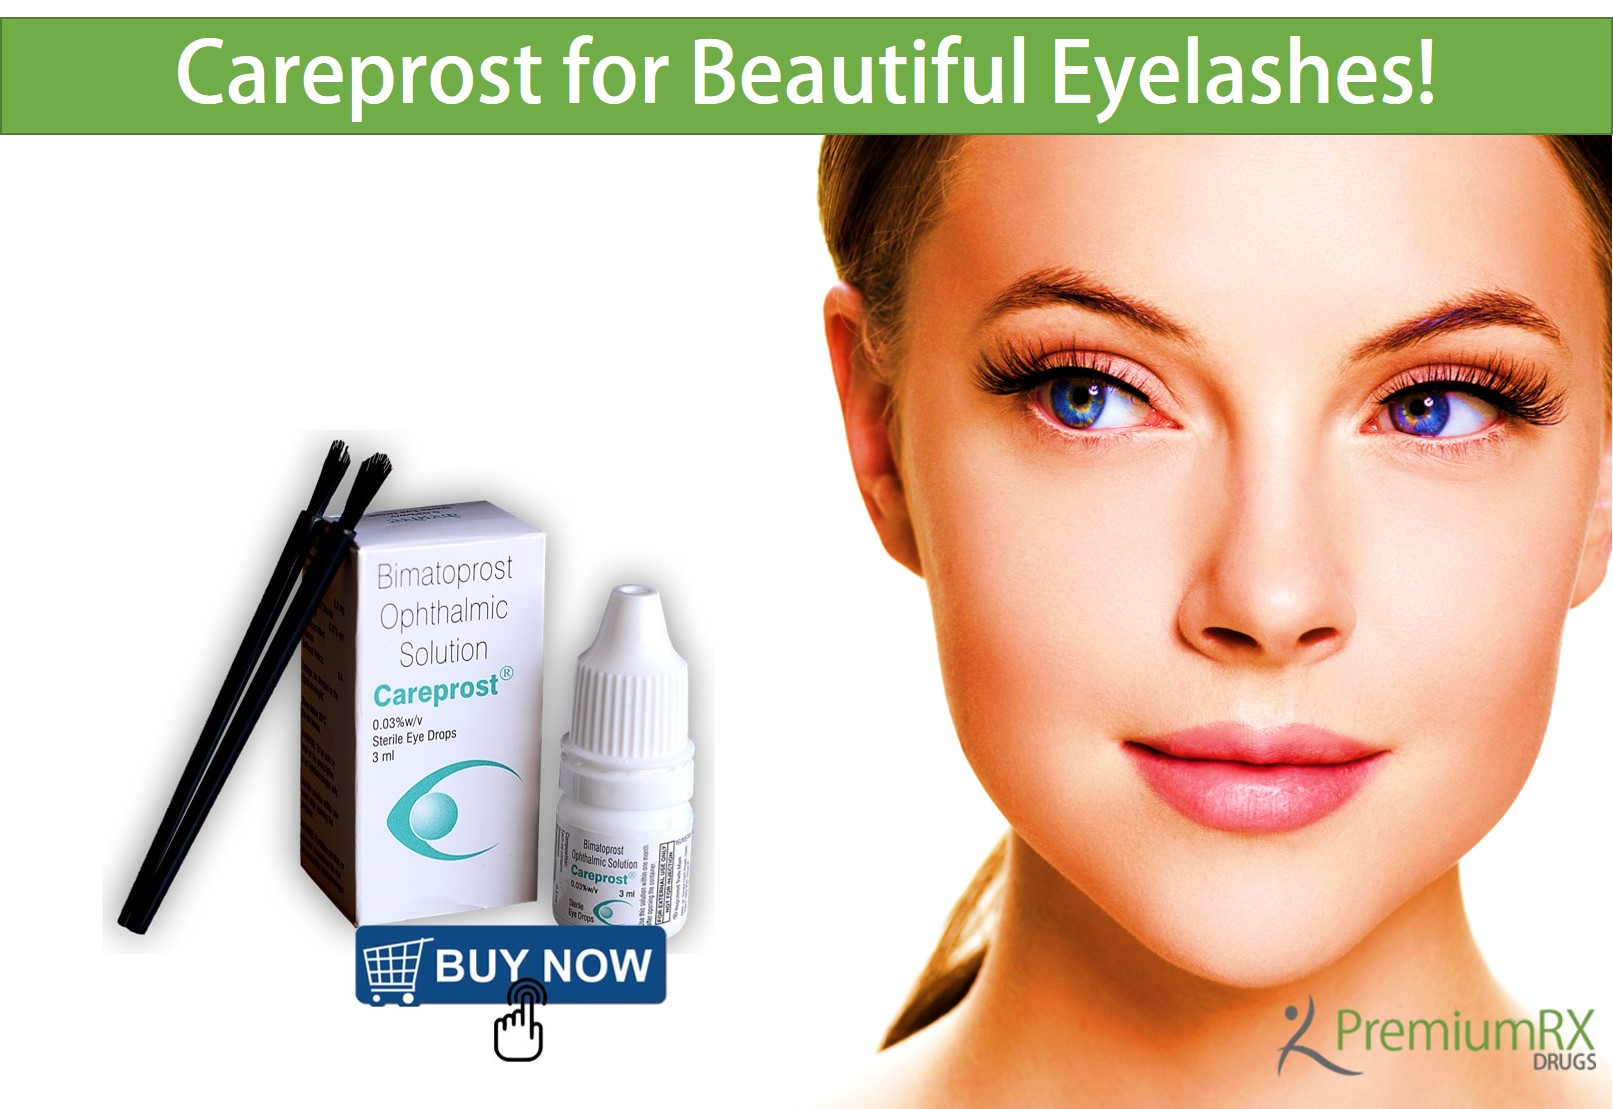 How to use Careprost Bimatoprost for Eyelash